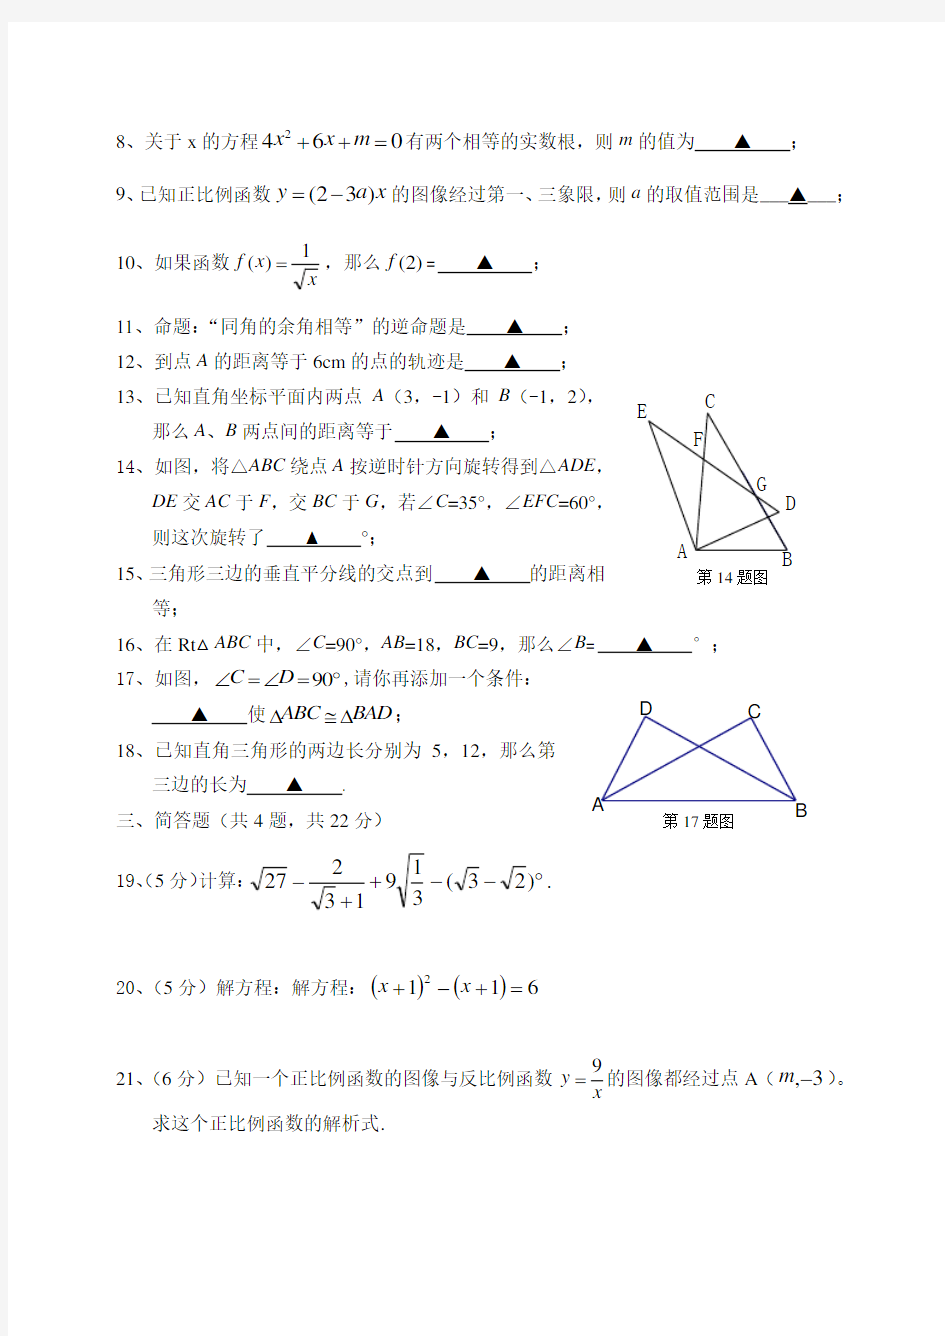 2018-2019上海版八年级数学上册期末试卷